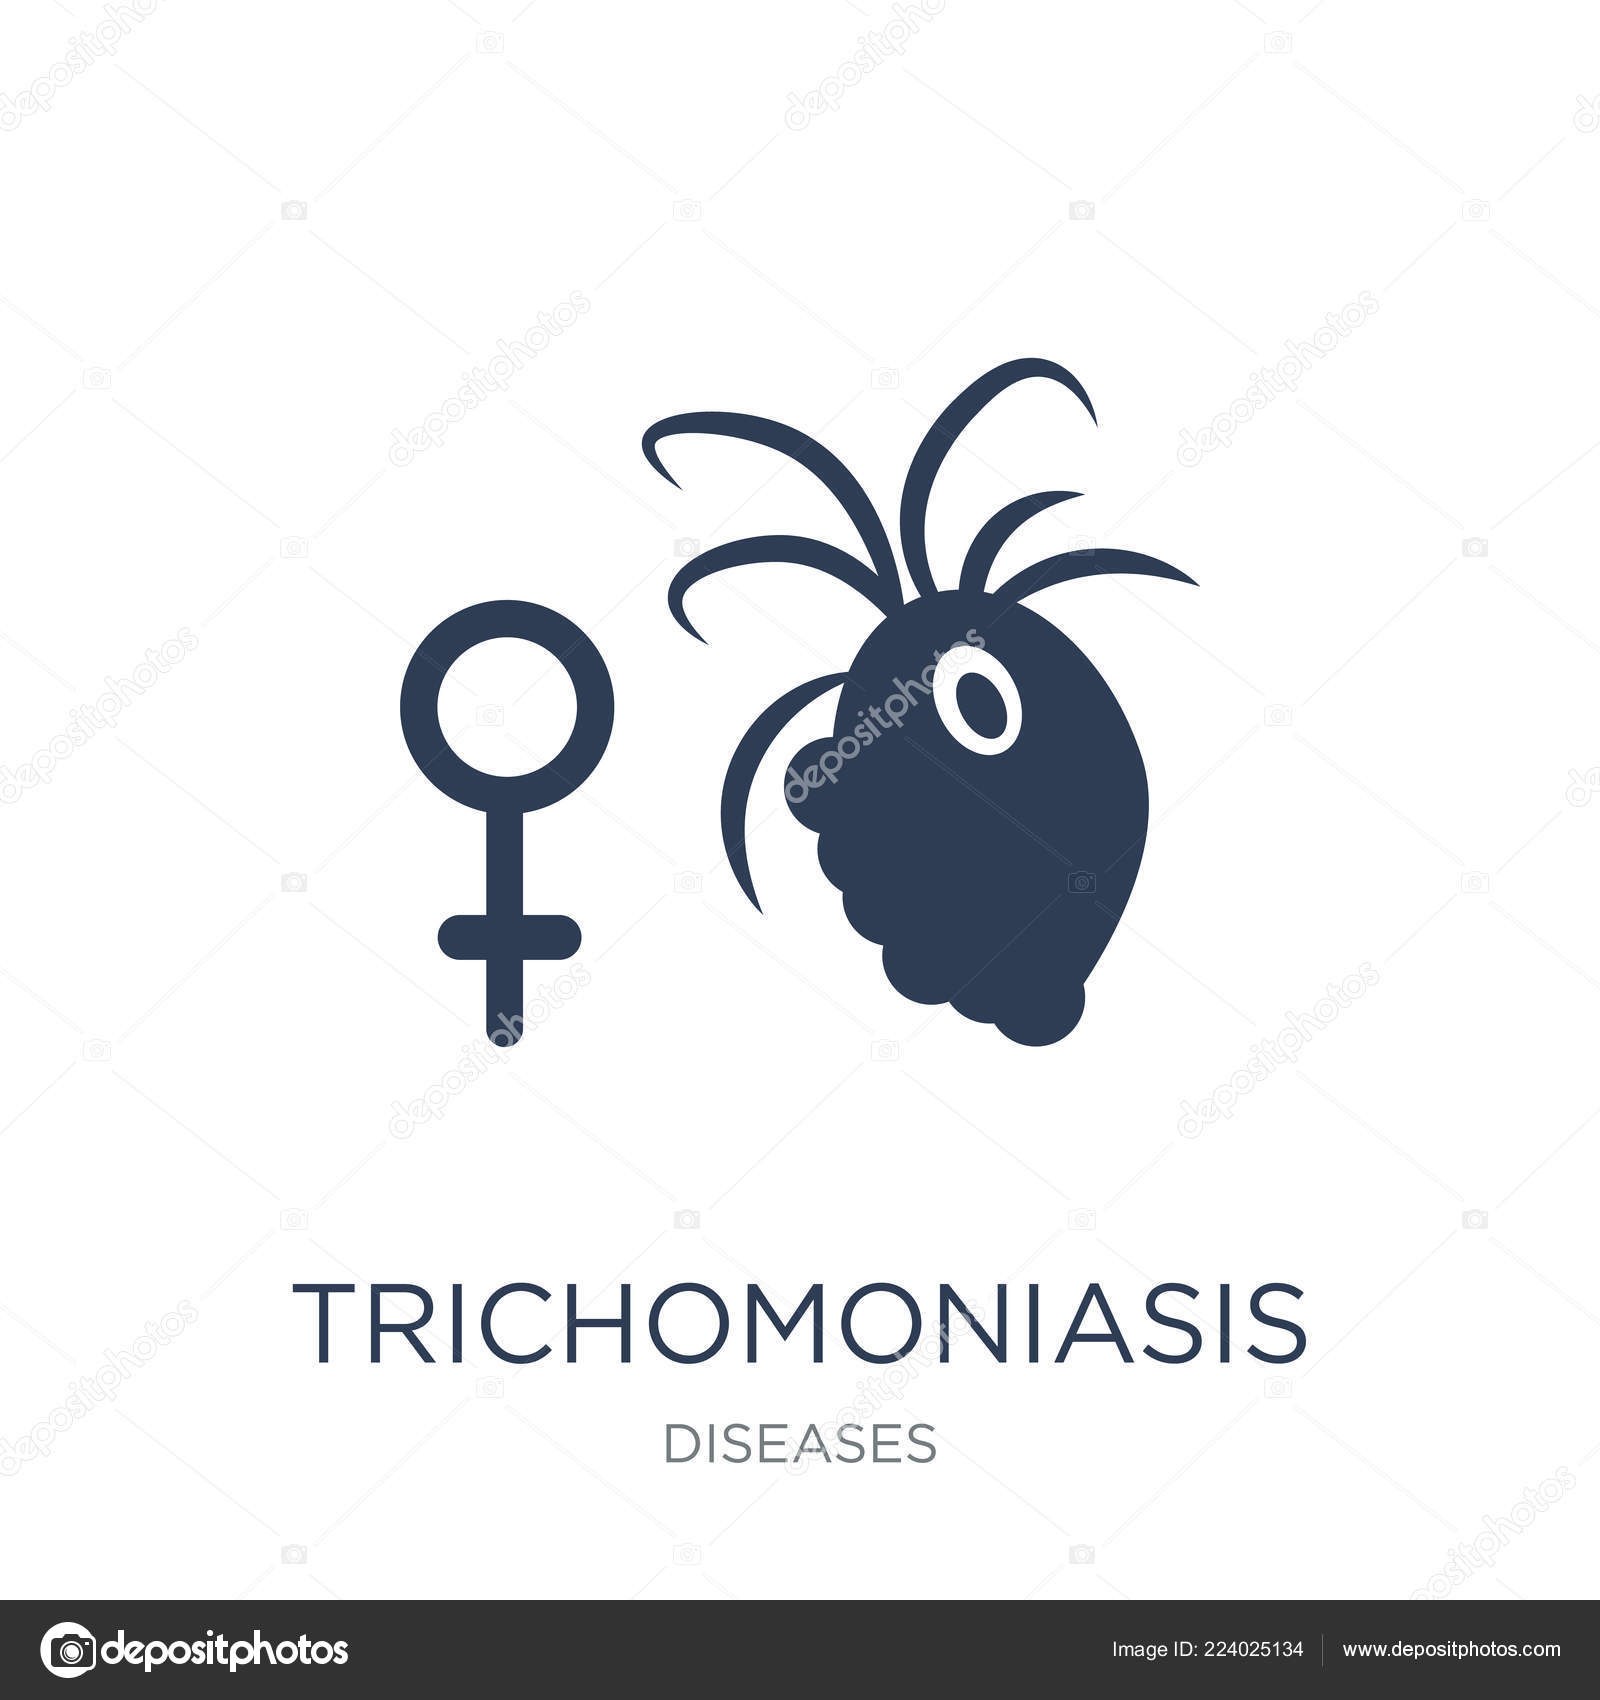 prostatitis lehet trichomoniasis